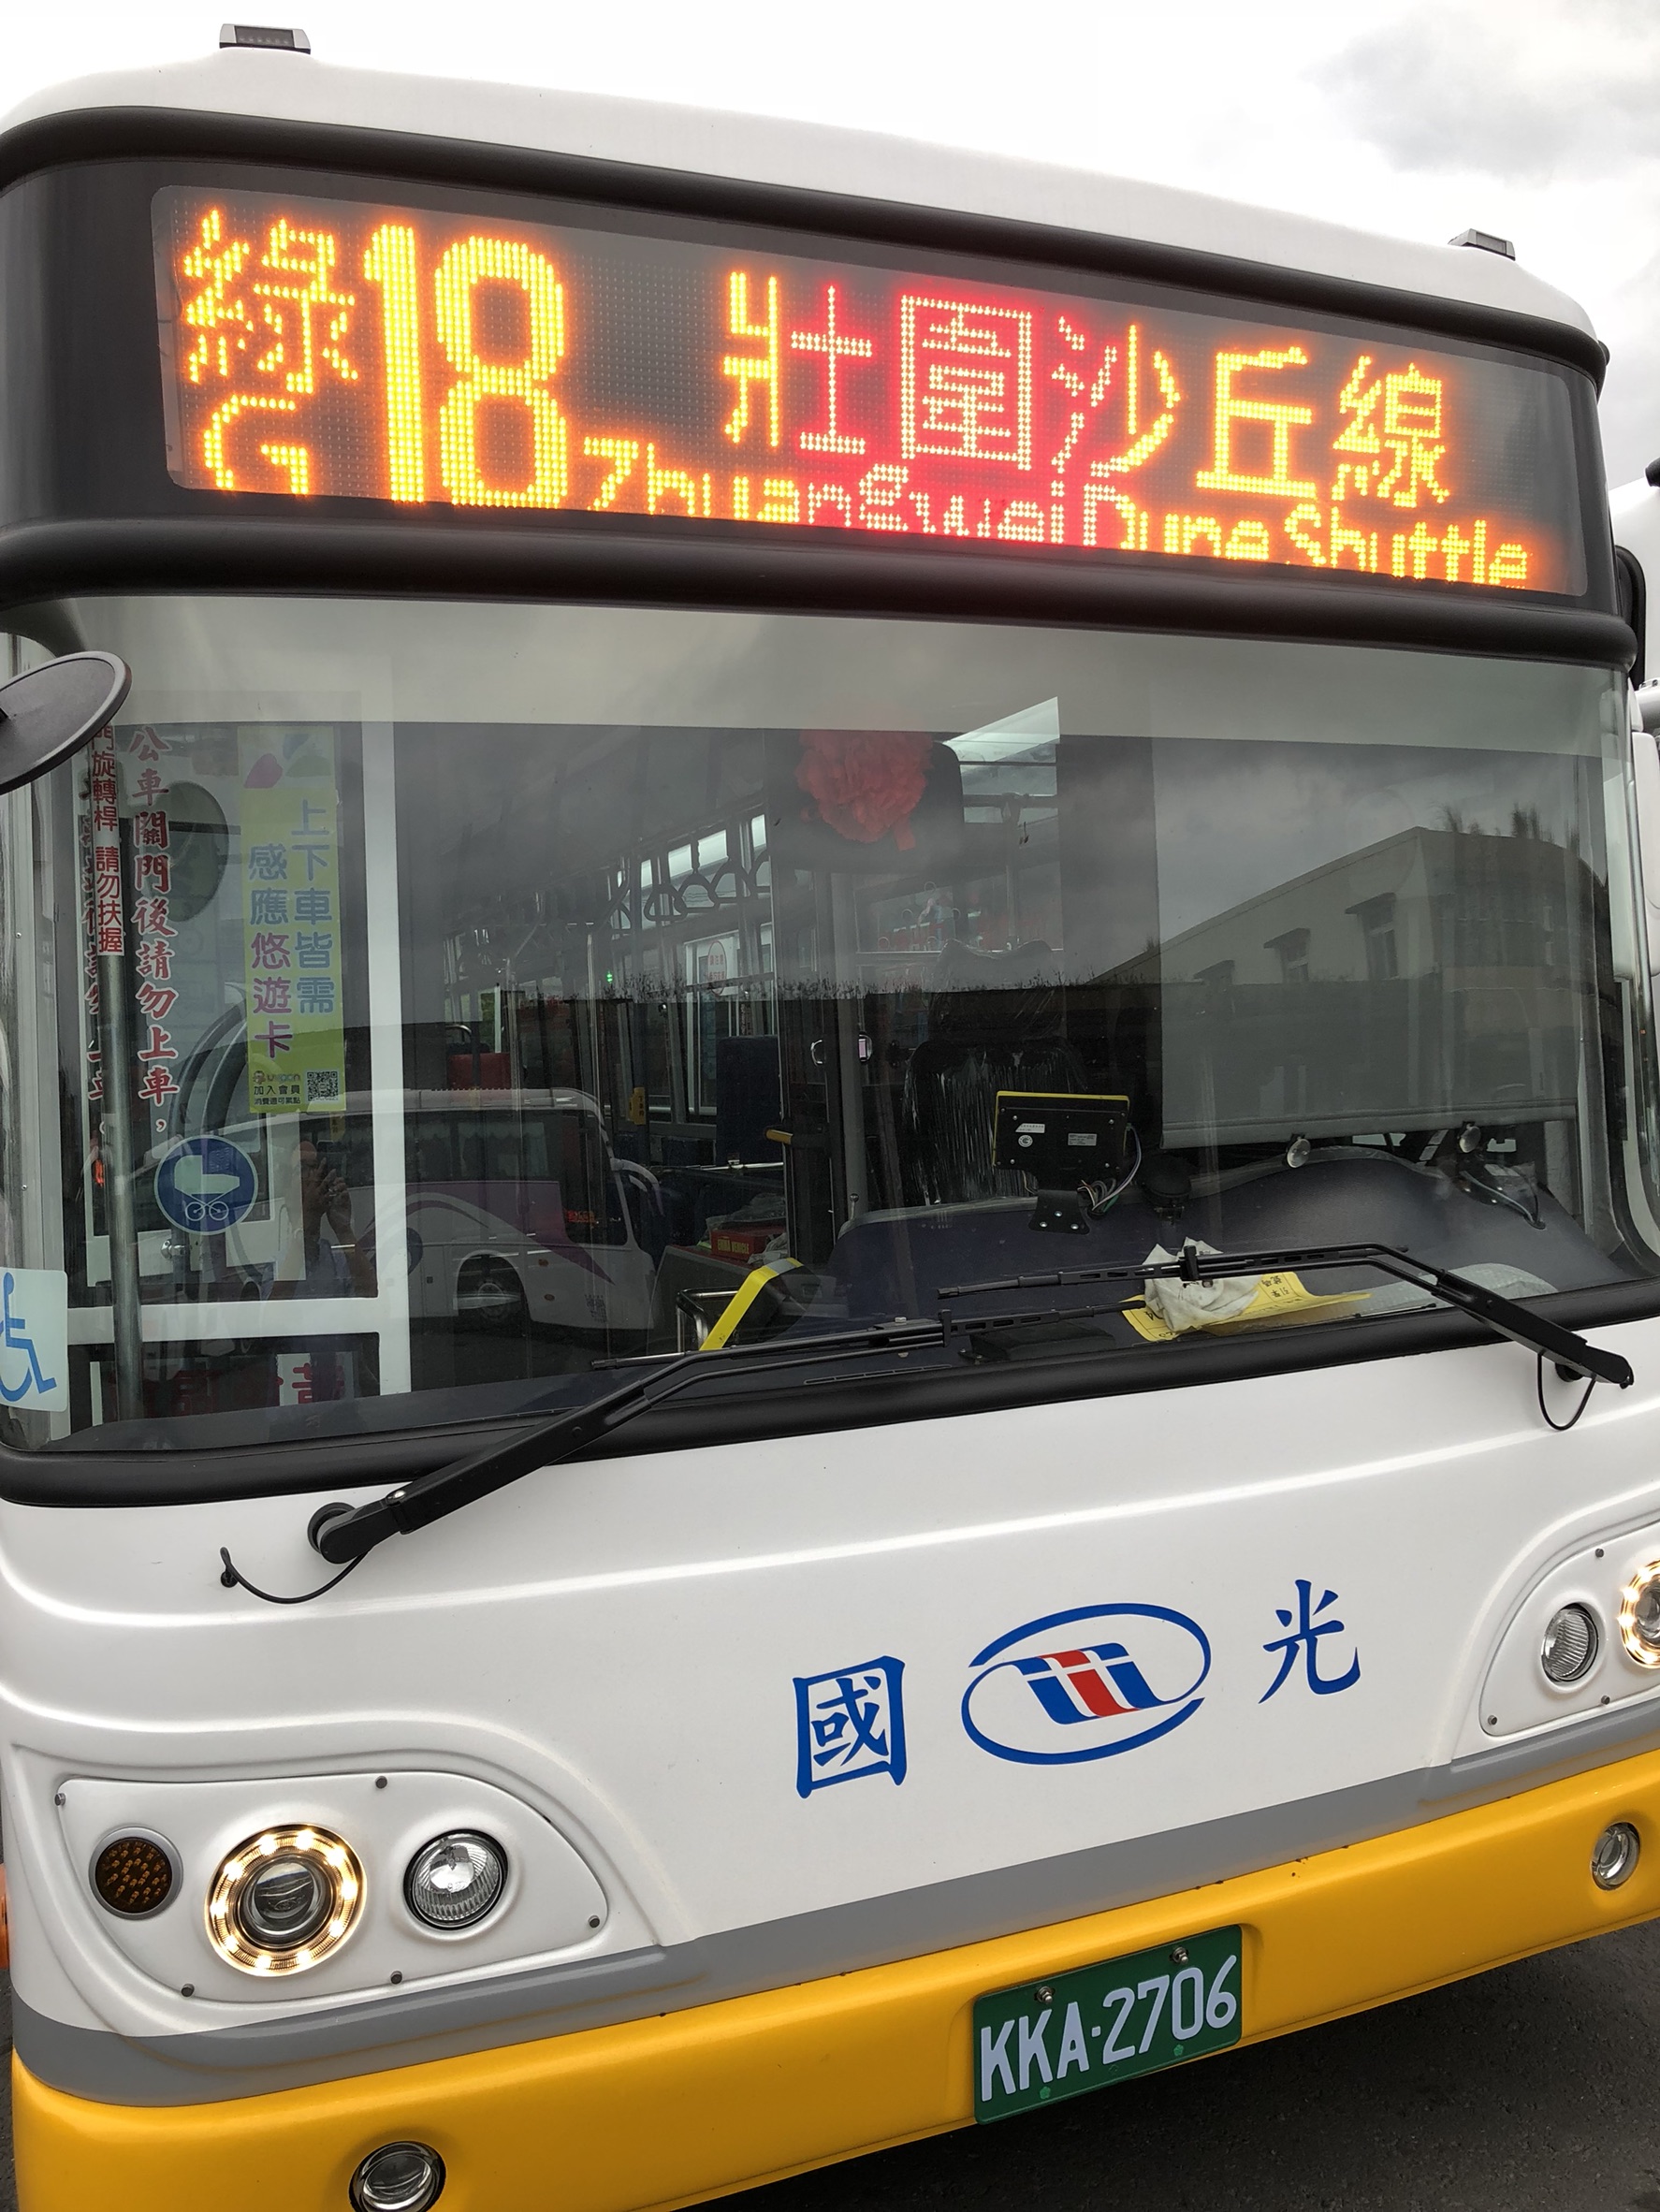 Jhuangwei дюна линия 10 низкого автобуса этажа новая дорога (1)